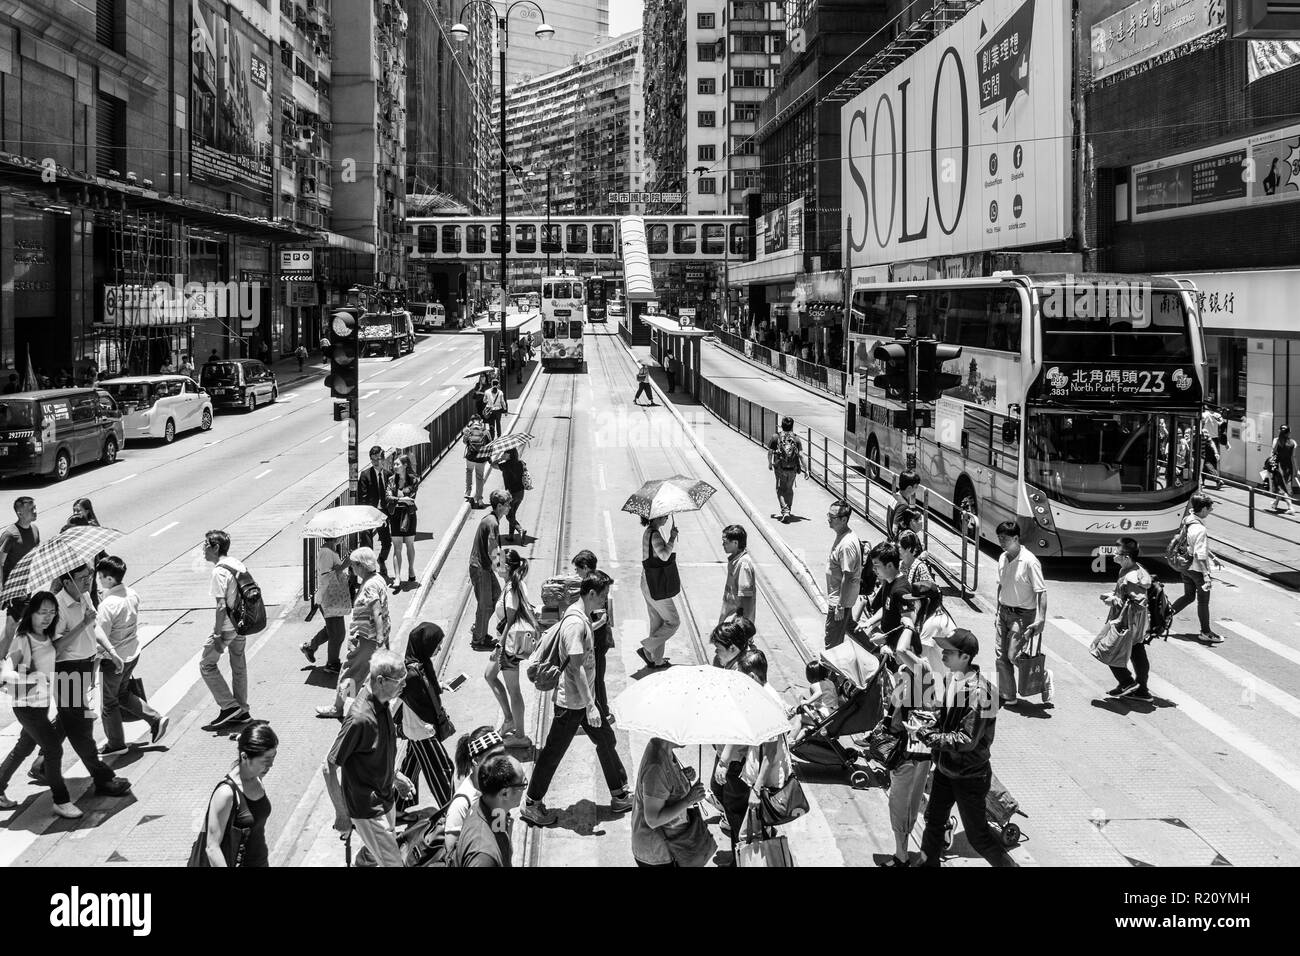 Hong Kong, China - 16 Mai 2018: Personen, die King's Road, North Point, eine hohe Dichte meist Arbeiterklasse Wohnviertel in Hong Kong isl Stockfoto